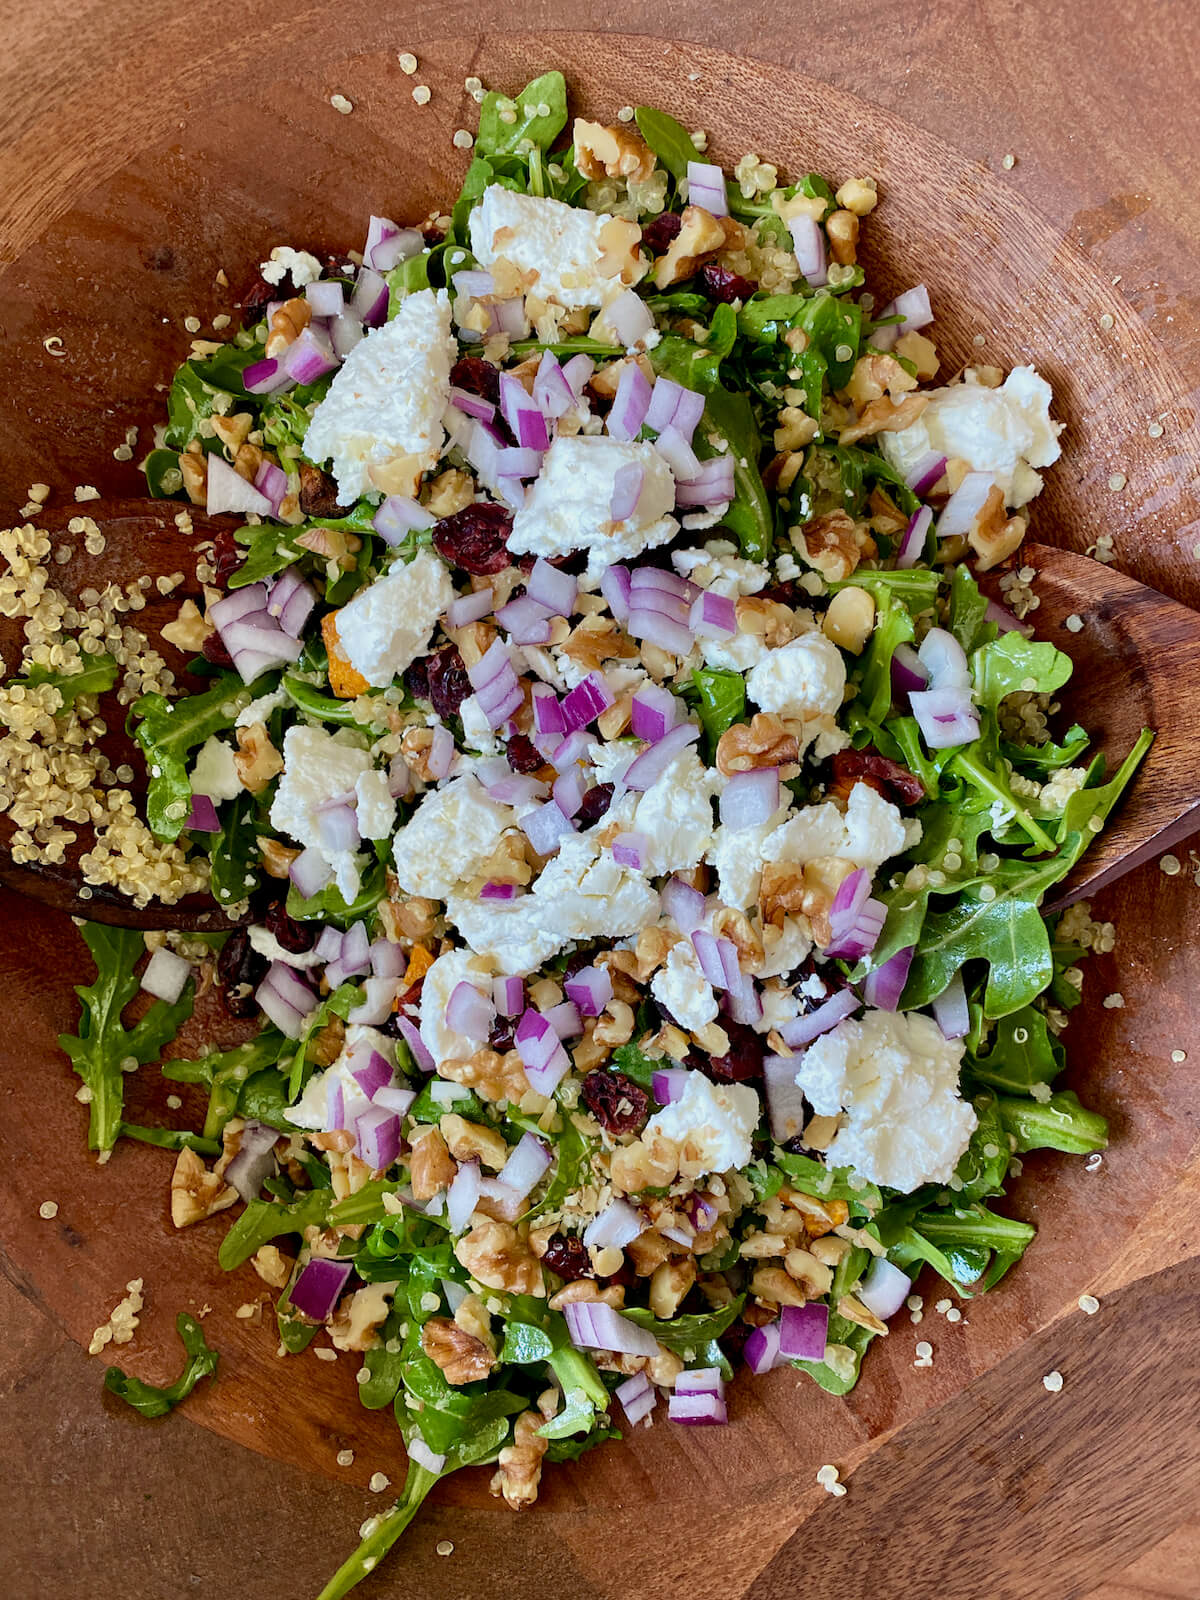 Arugula quinoa salad assembled in a wooden salad bowl.